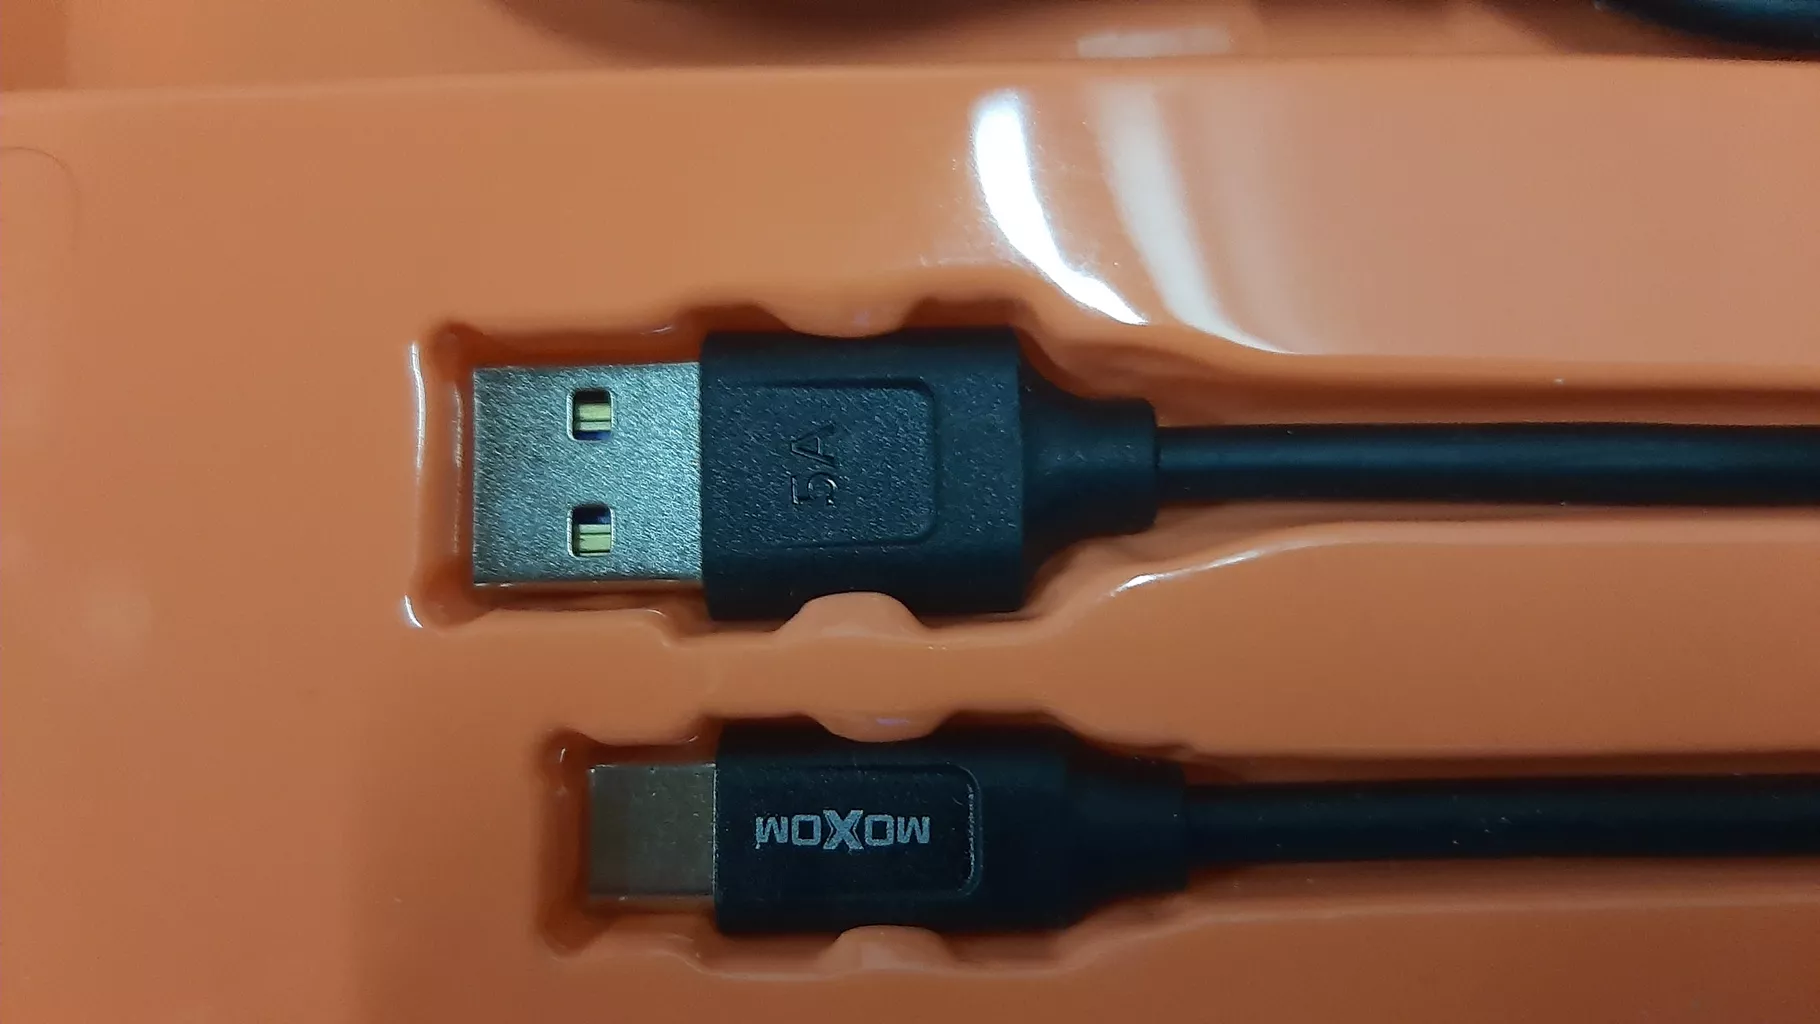 کابل تبدیل USB به USB-C موکسوم مدل CC-45 طول 1 متر